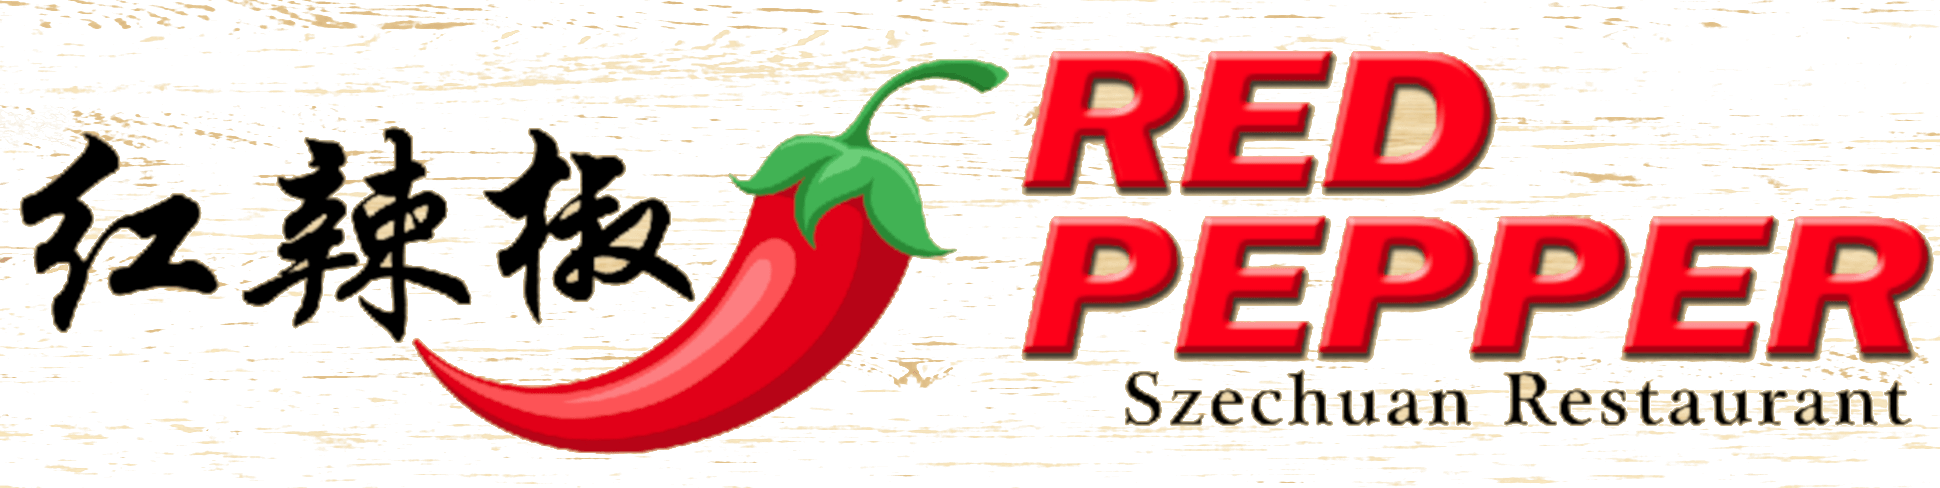 Red Chili Pepper Restaurant Logo - Red Pepper